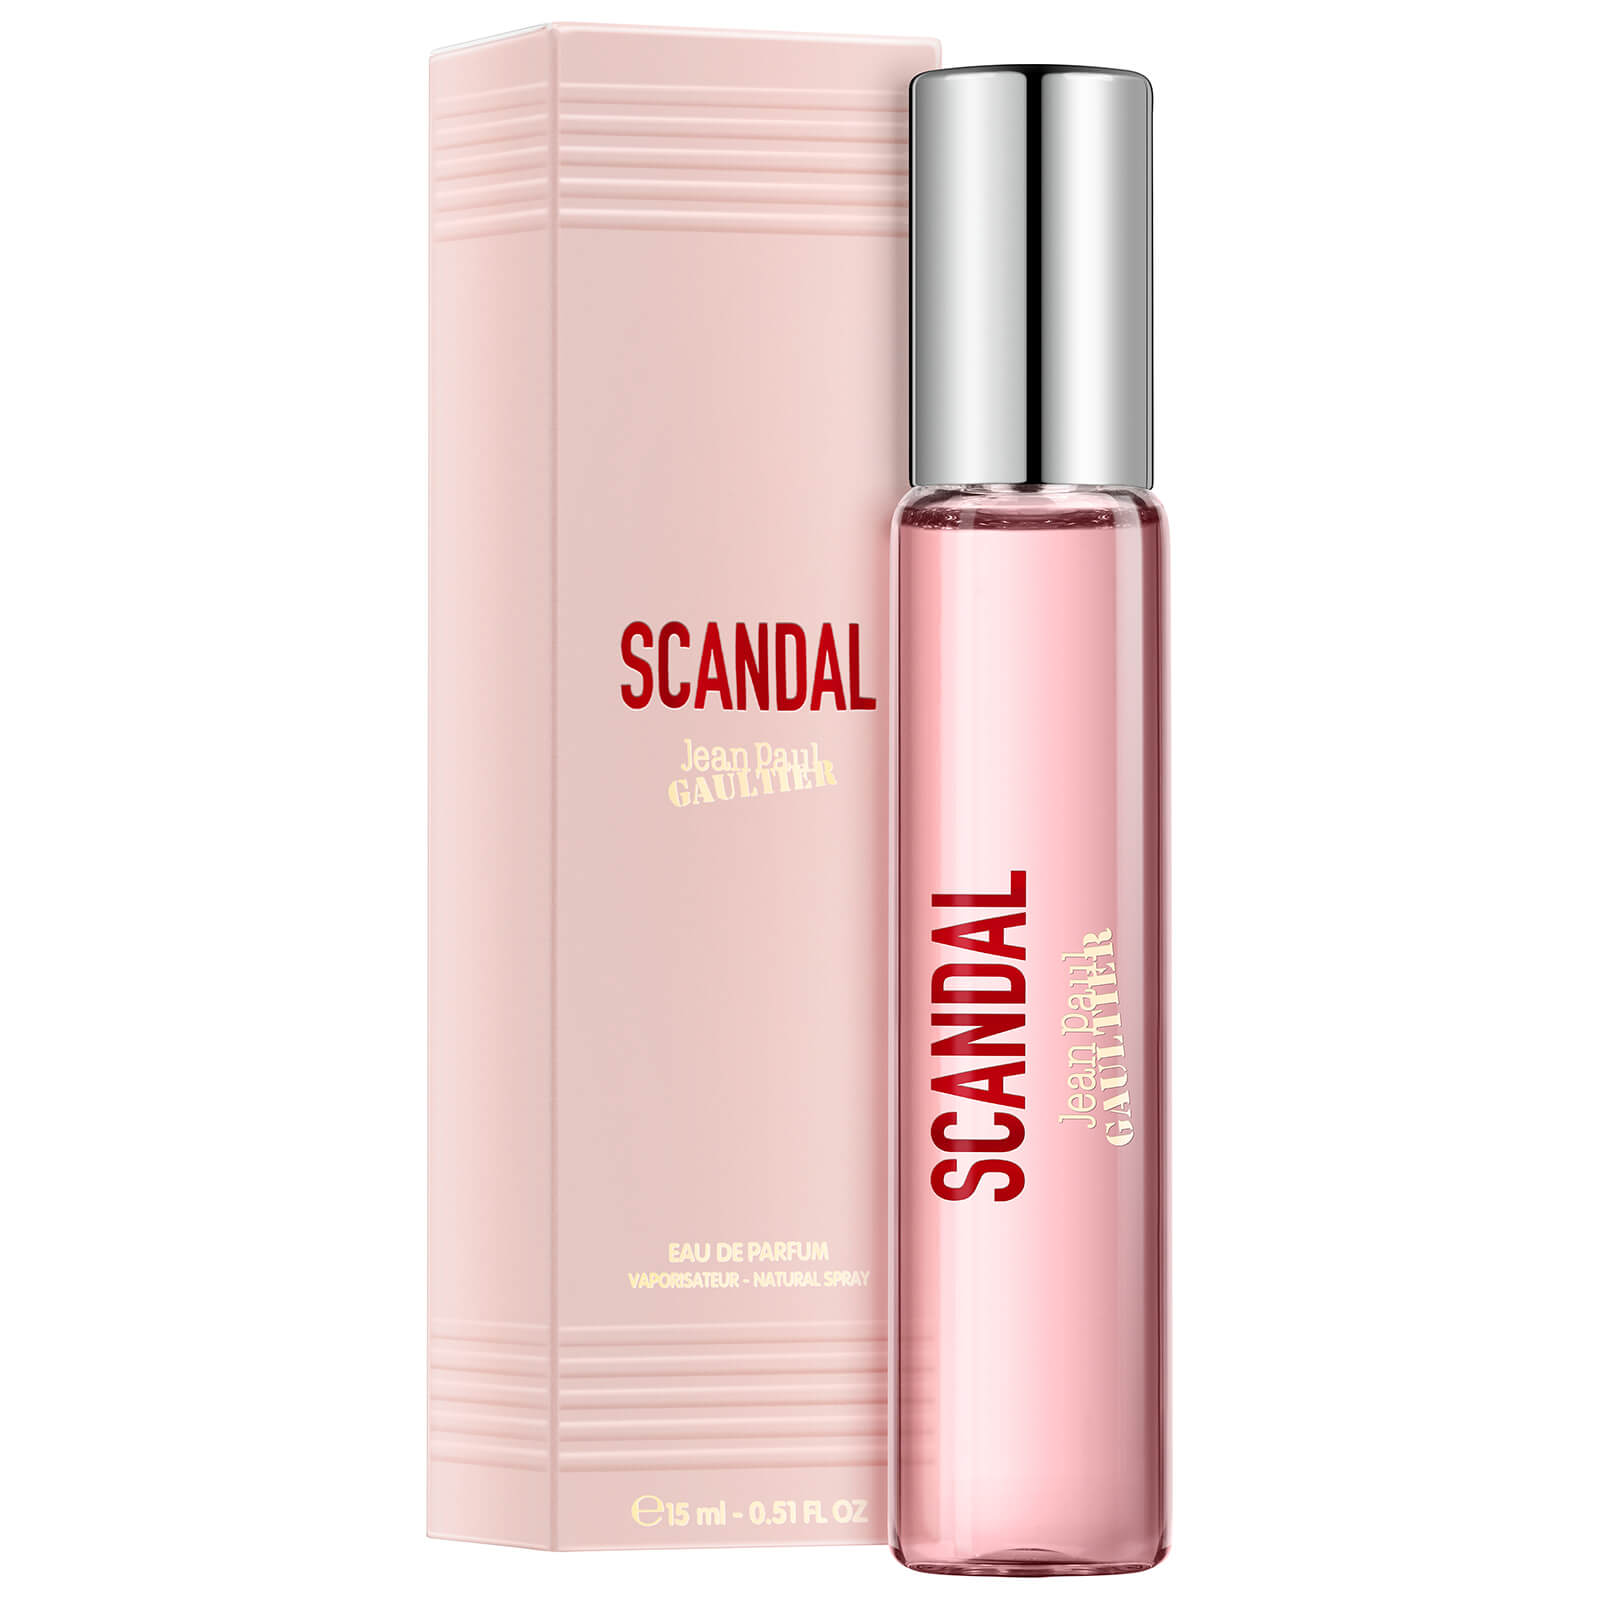 Jean Paul Gaultier Scandal Eau de Parfum 15ml